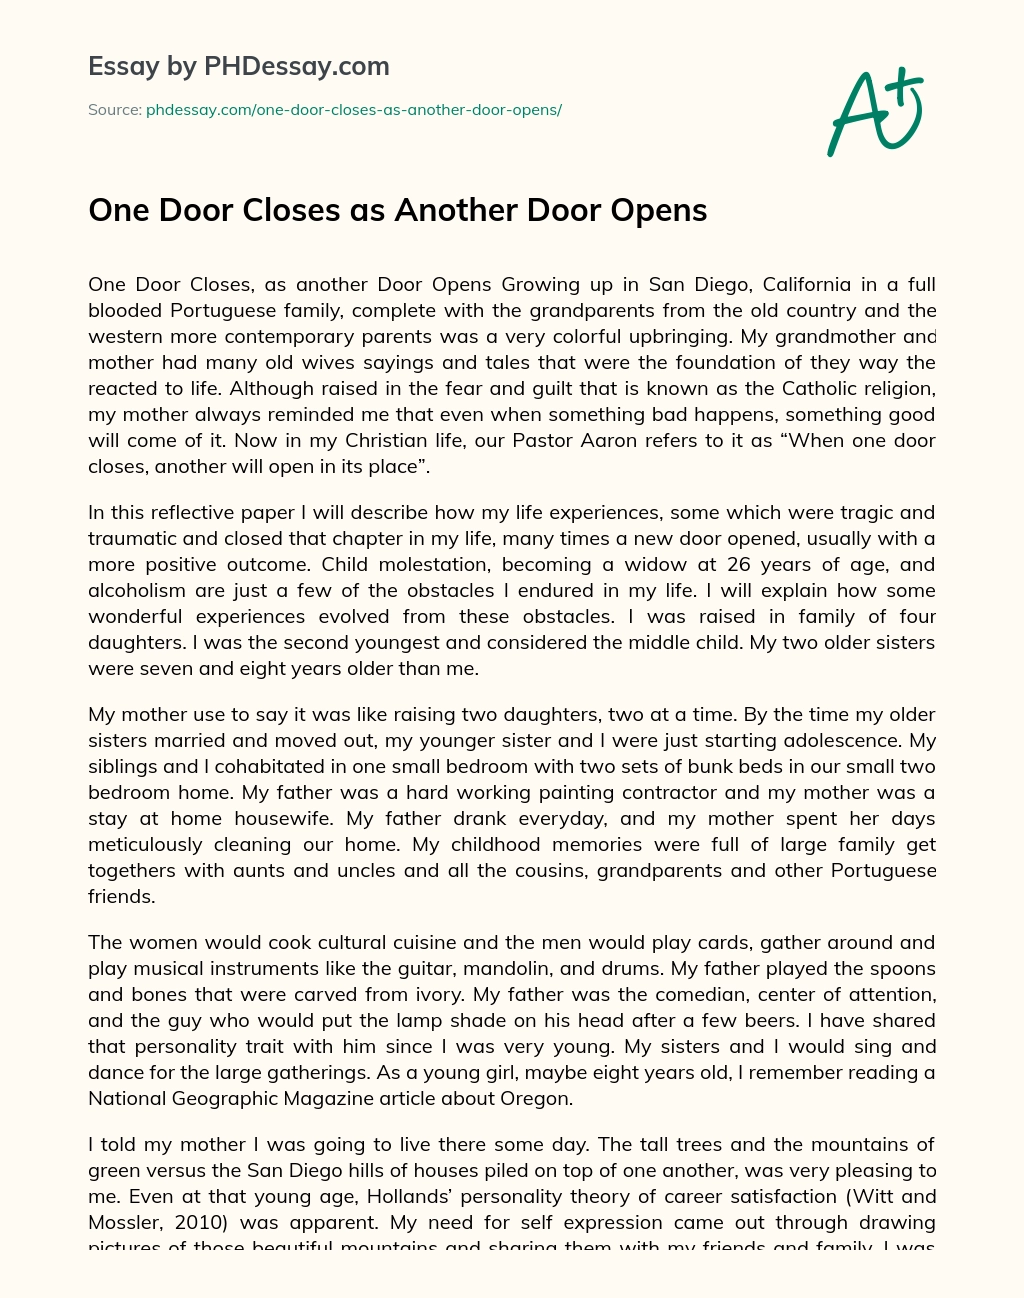 One Door Closes as Another Door Opens essay